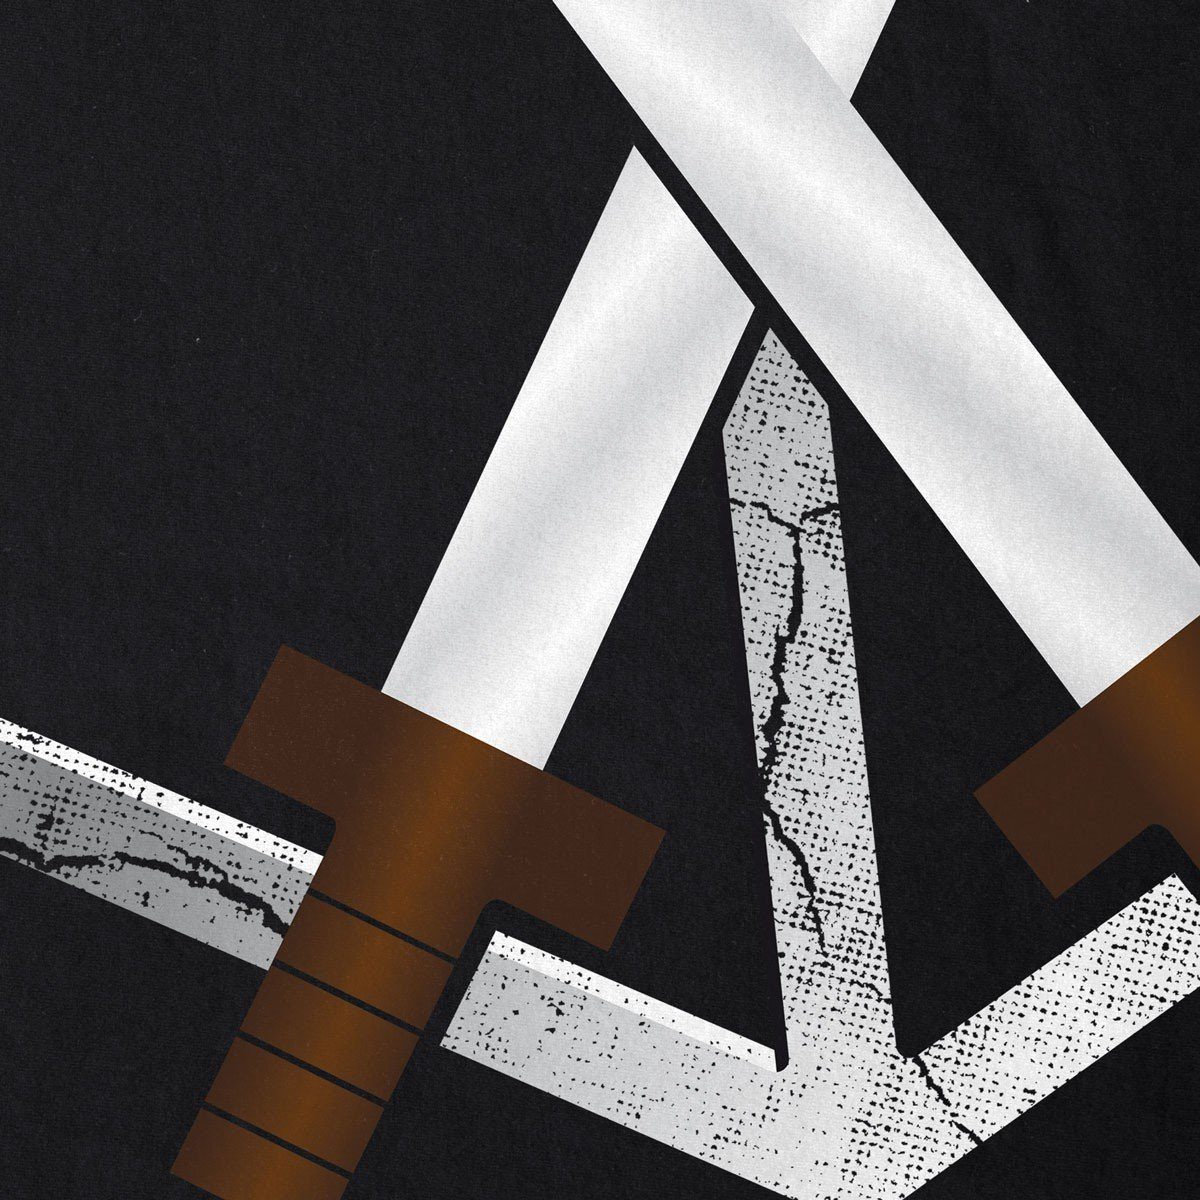 style3 Print-Shirt Herren T-Shirt Ausbildungstruppe Titan Attack on Eren AoT Riesen Wappen Emblem